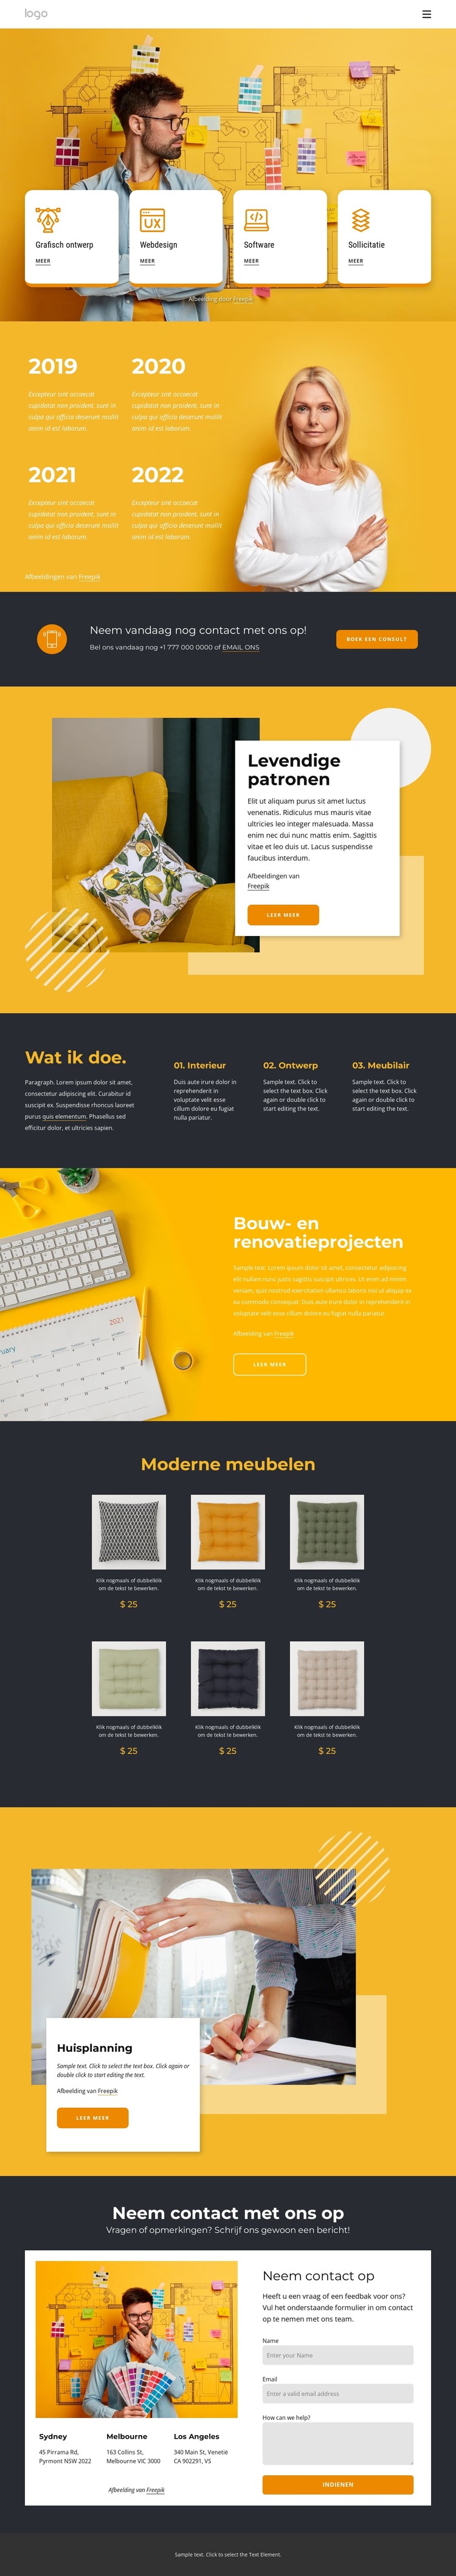 Modern ontwerpbureau HTML-sjabloon